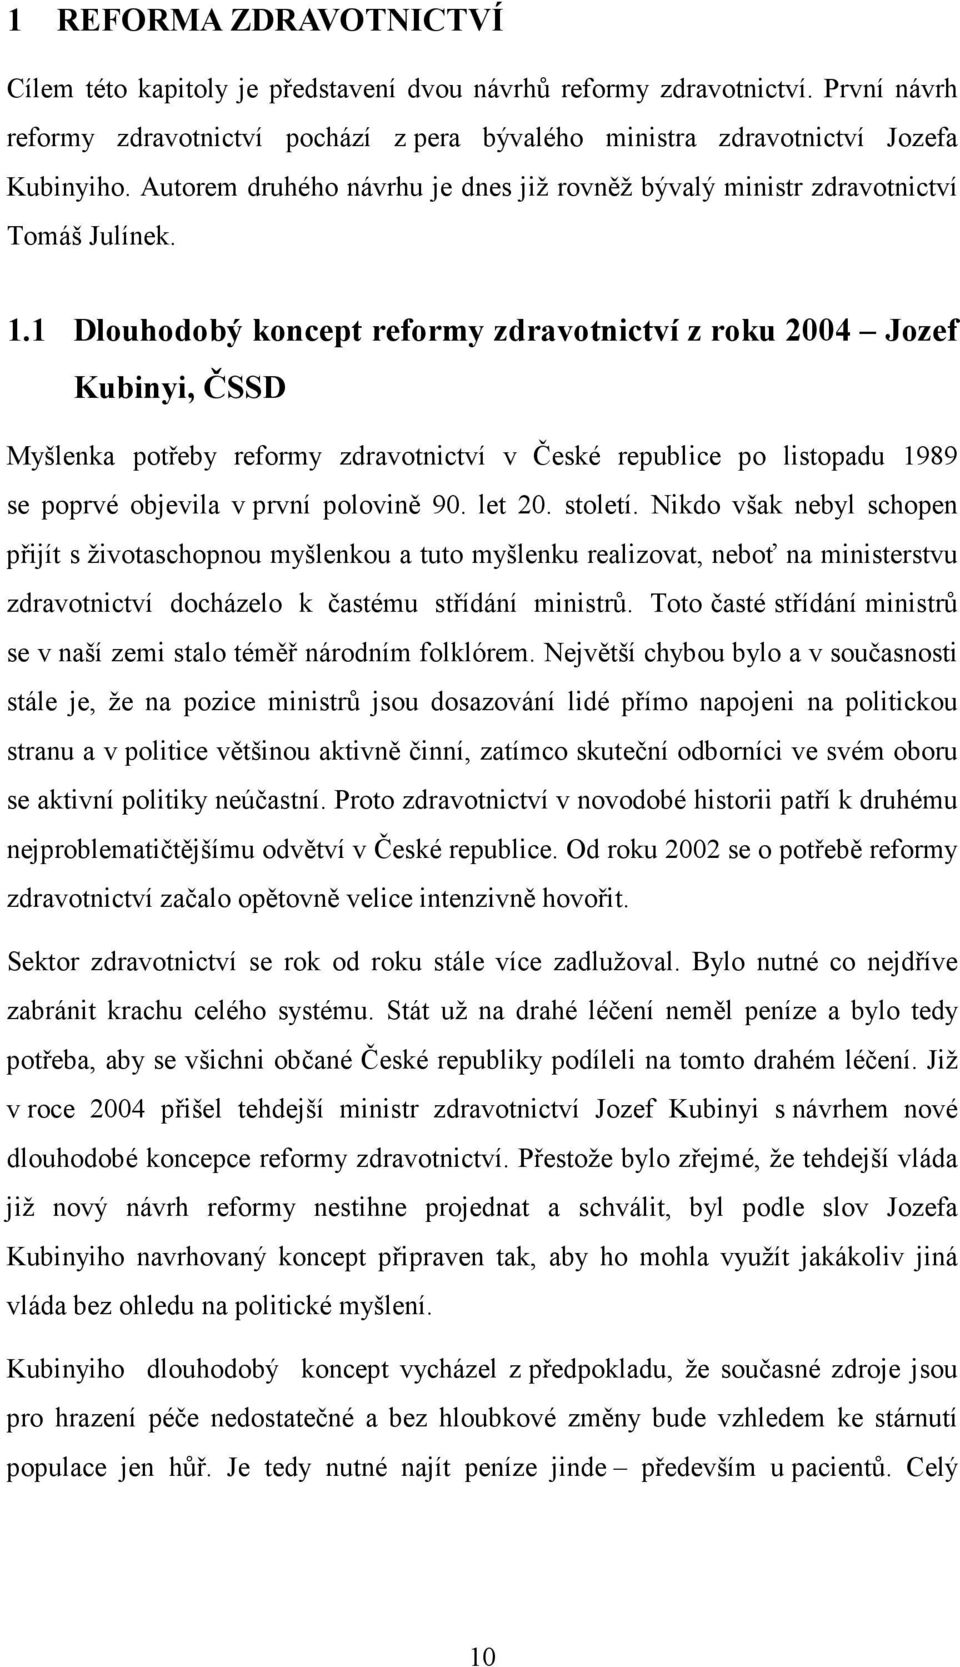 1 Dlouhodobý koncept reformy zdravotnictví z roku 2004 Jozef Kubinyi, ČSSD Myšlenka potřeby reformy zdravotnictví v České republice po listopadu 1989 se poprvé objevila v první polovině 90. let 20.